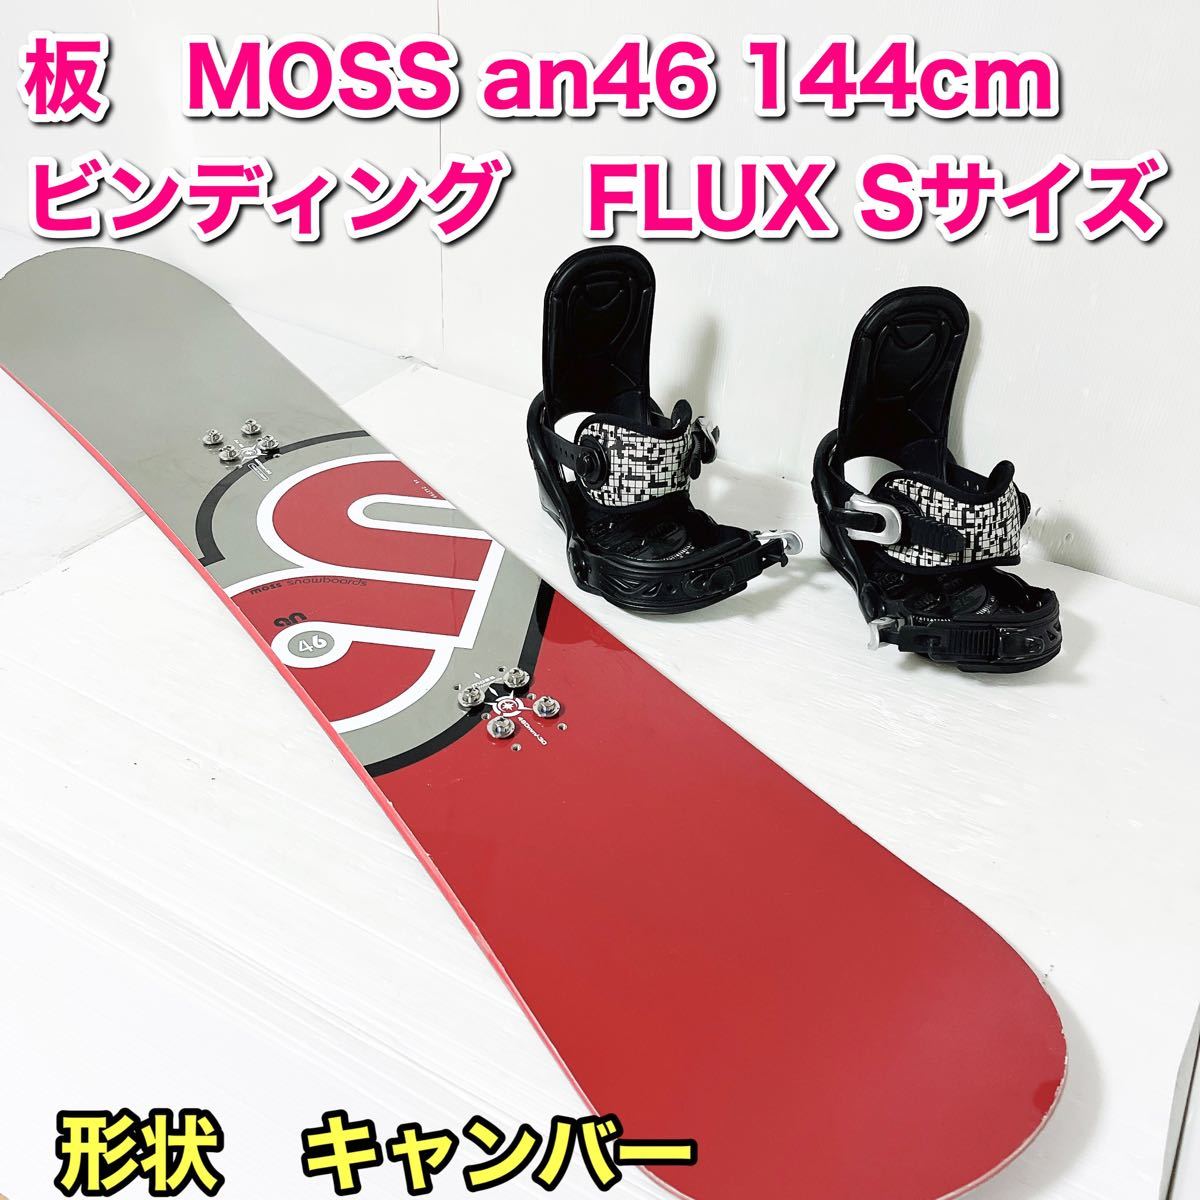 MOSS スノーボード ビンディング FLUX 144cm レディース セット